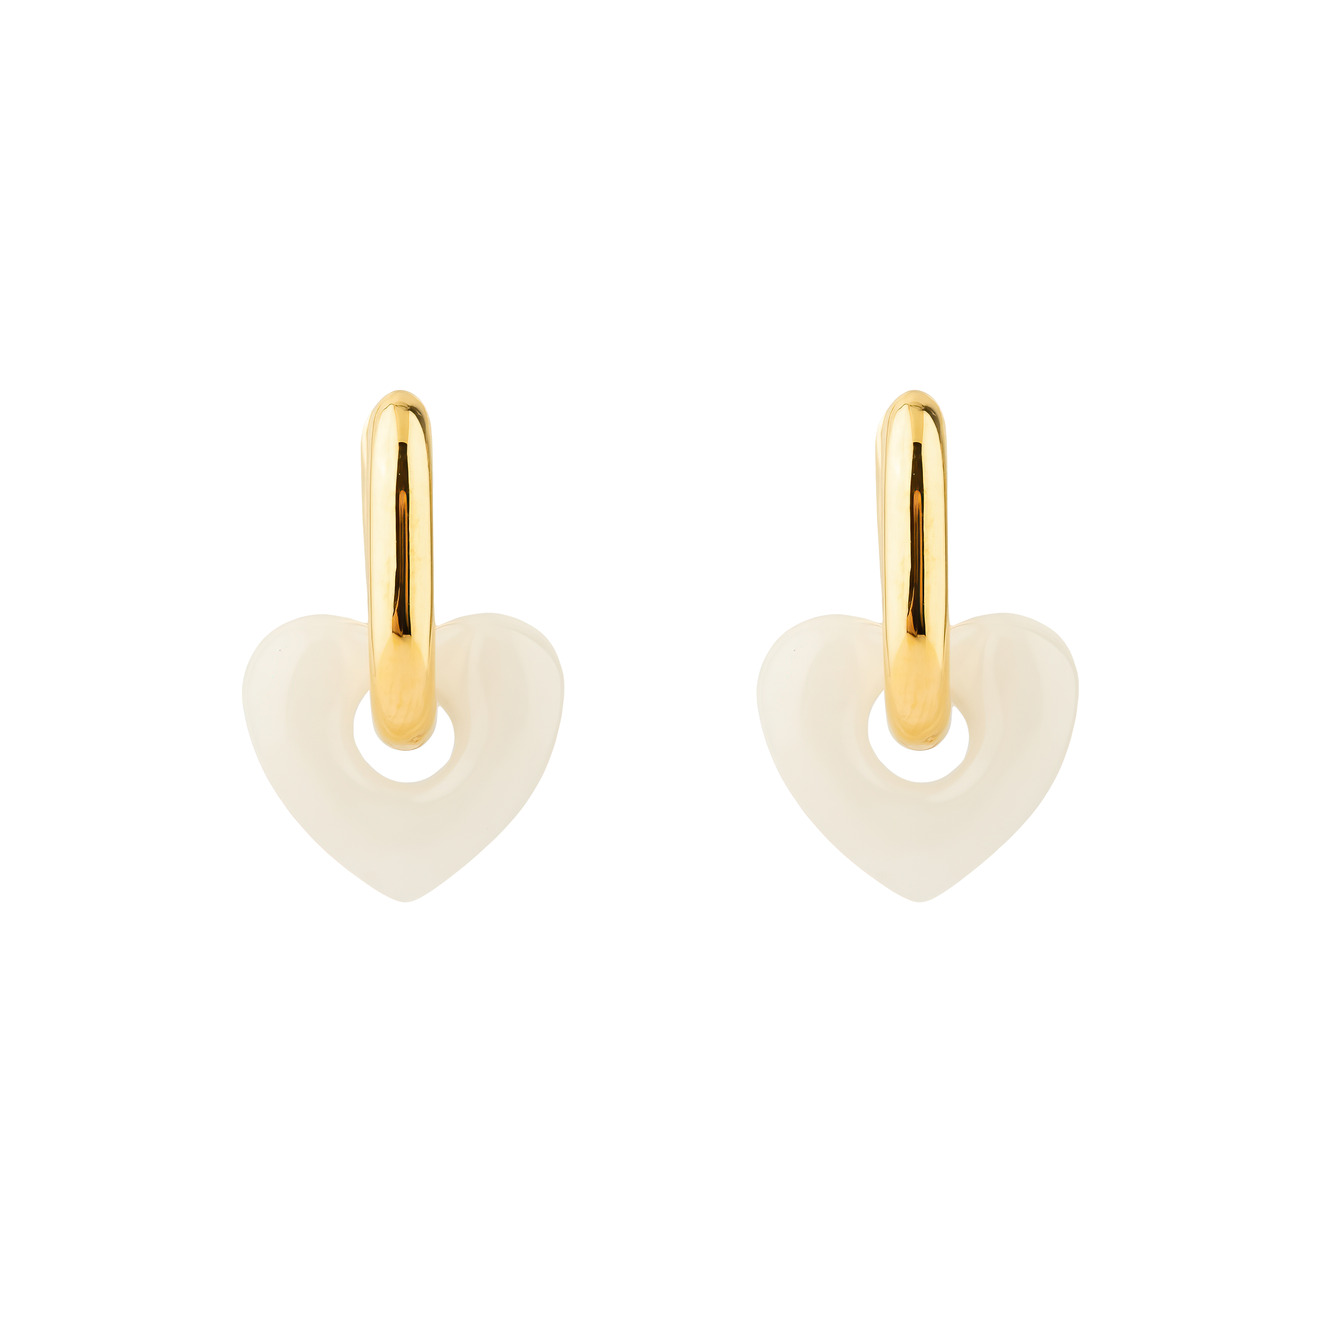 Aqua Золотистые серьги с белыми подвесками-сердцами цена и фото